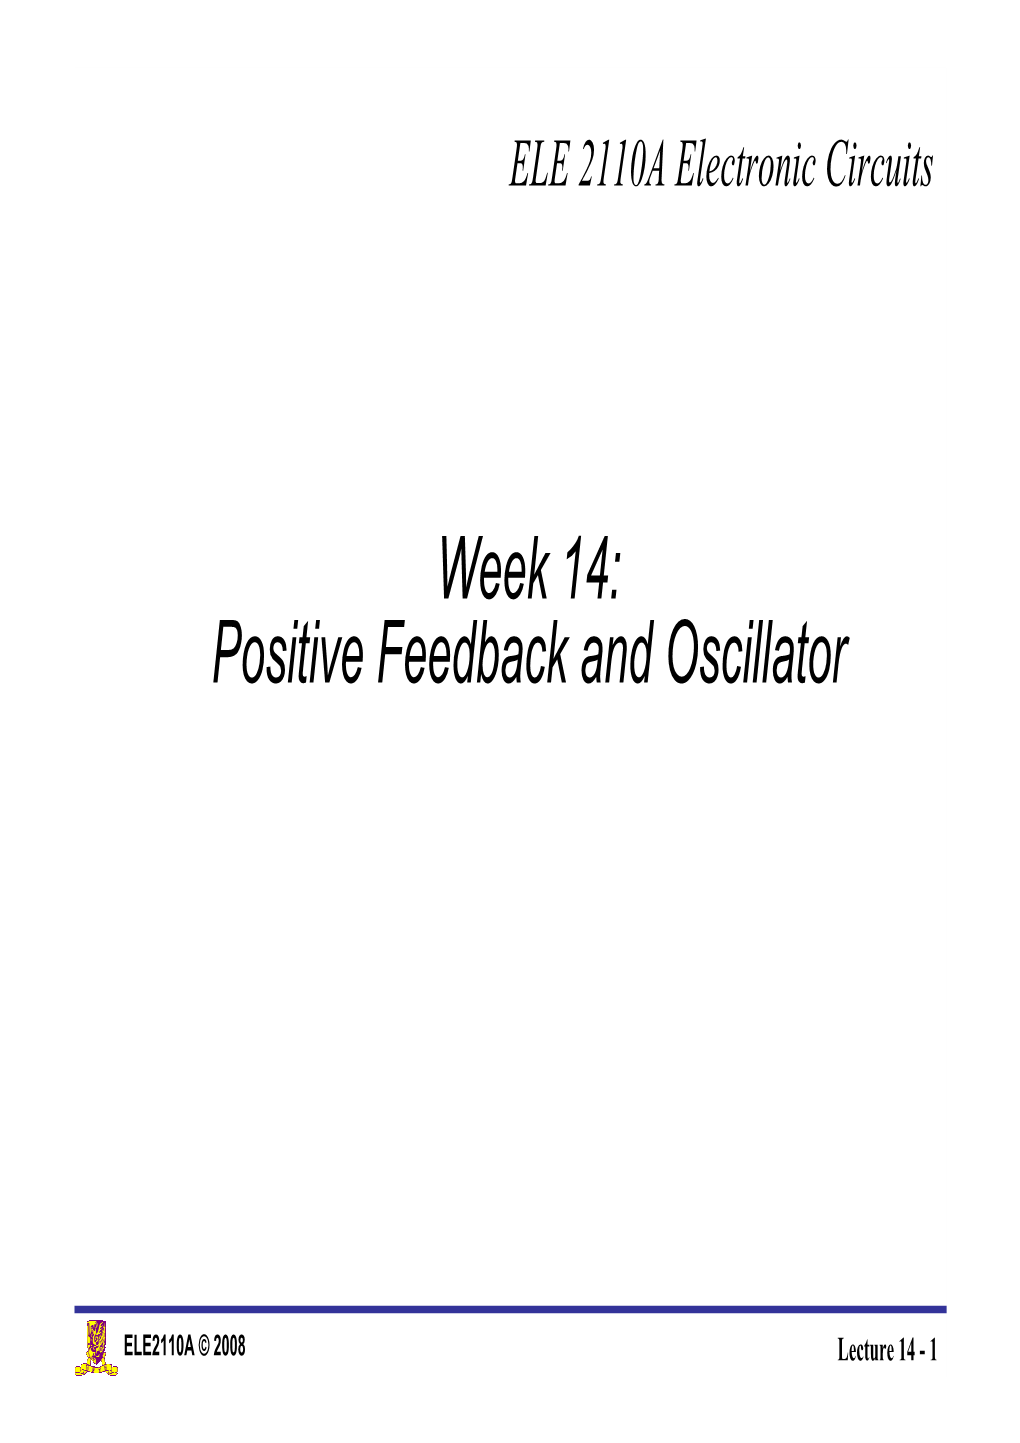 Week 14: Positive Feedback and Oscillator